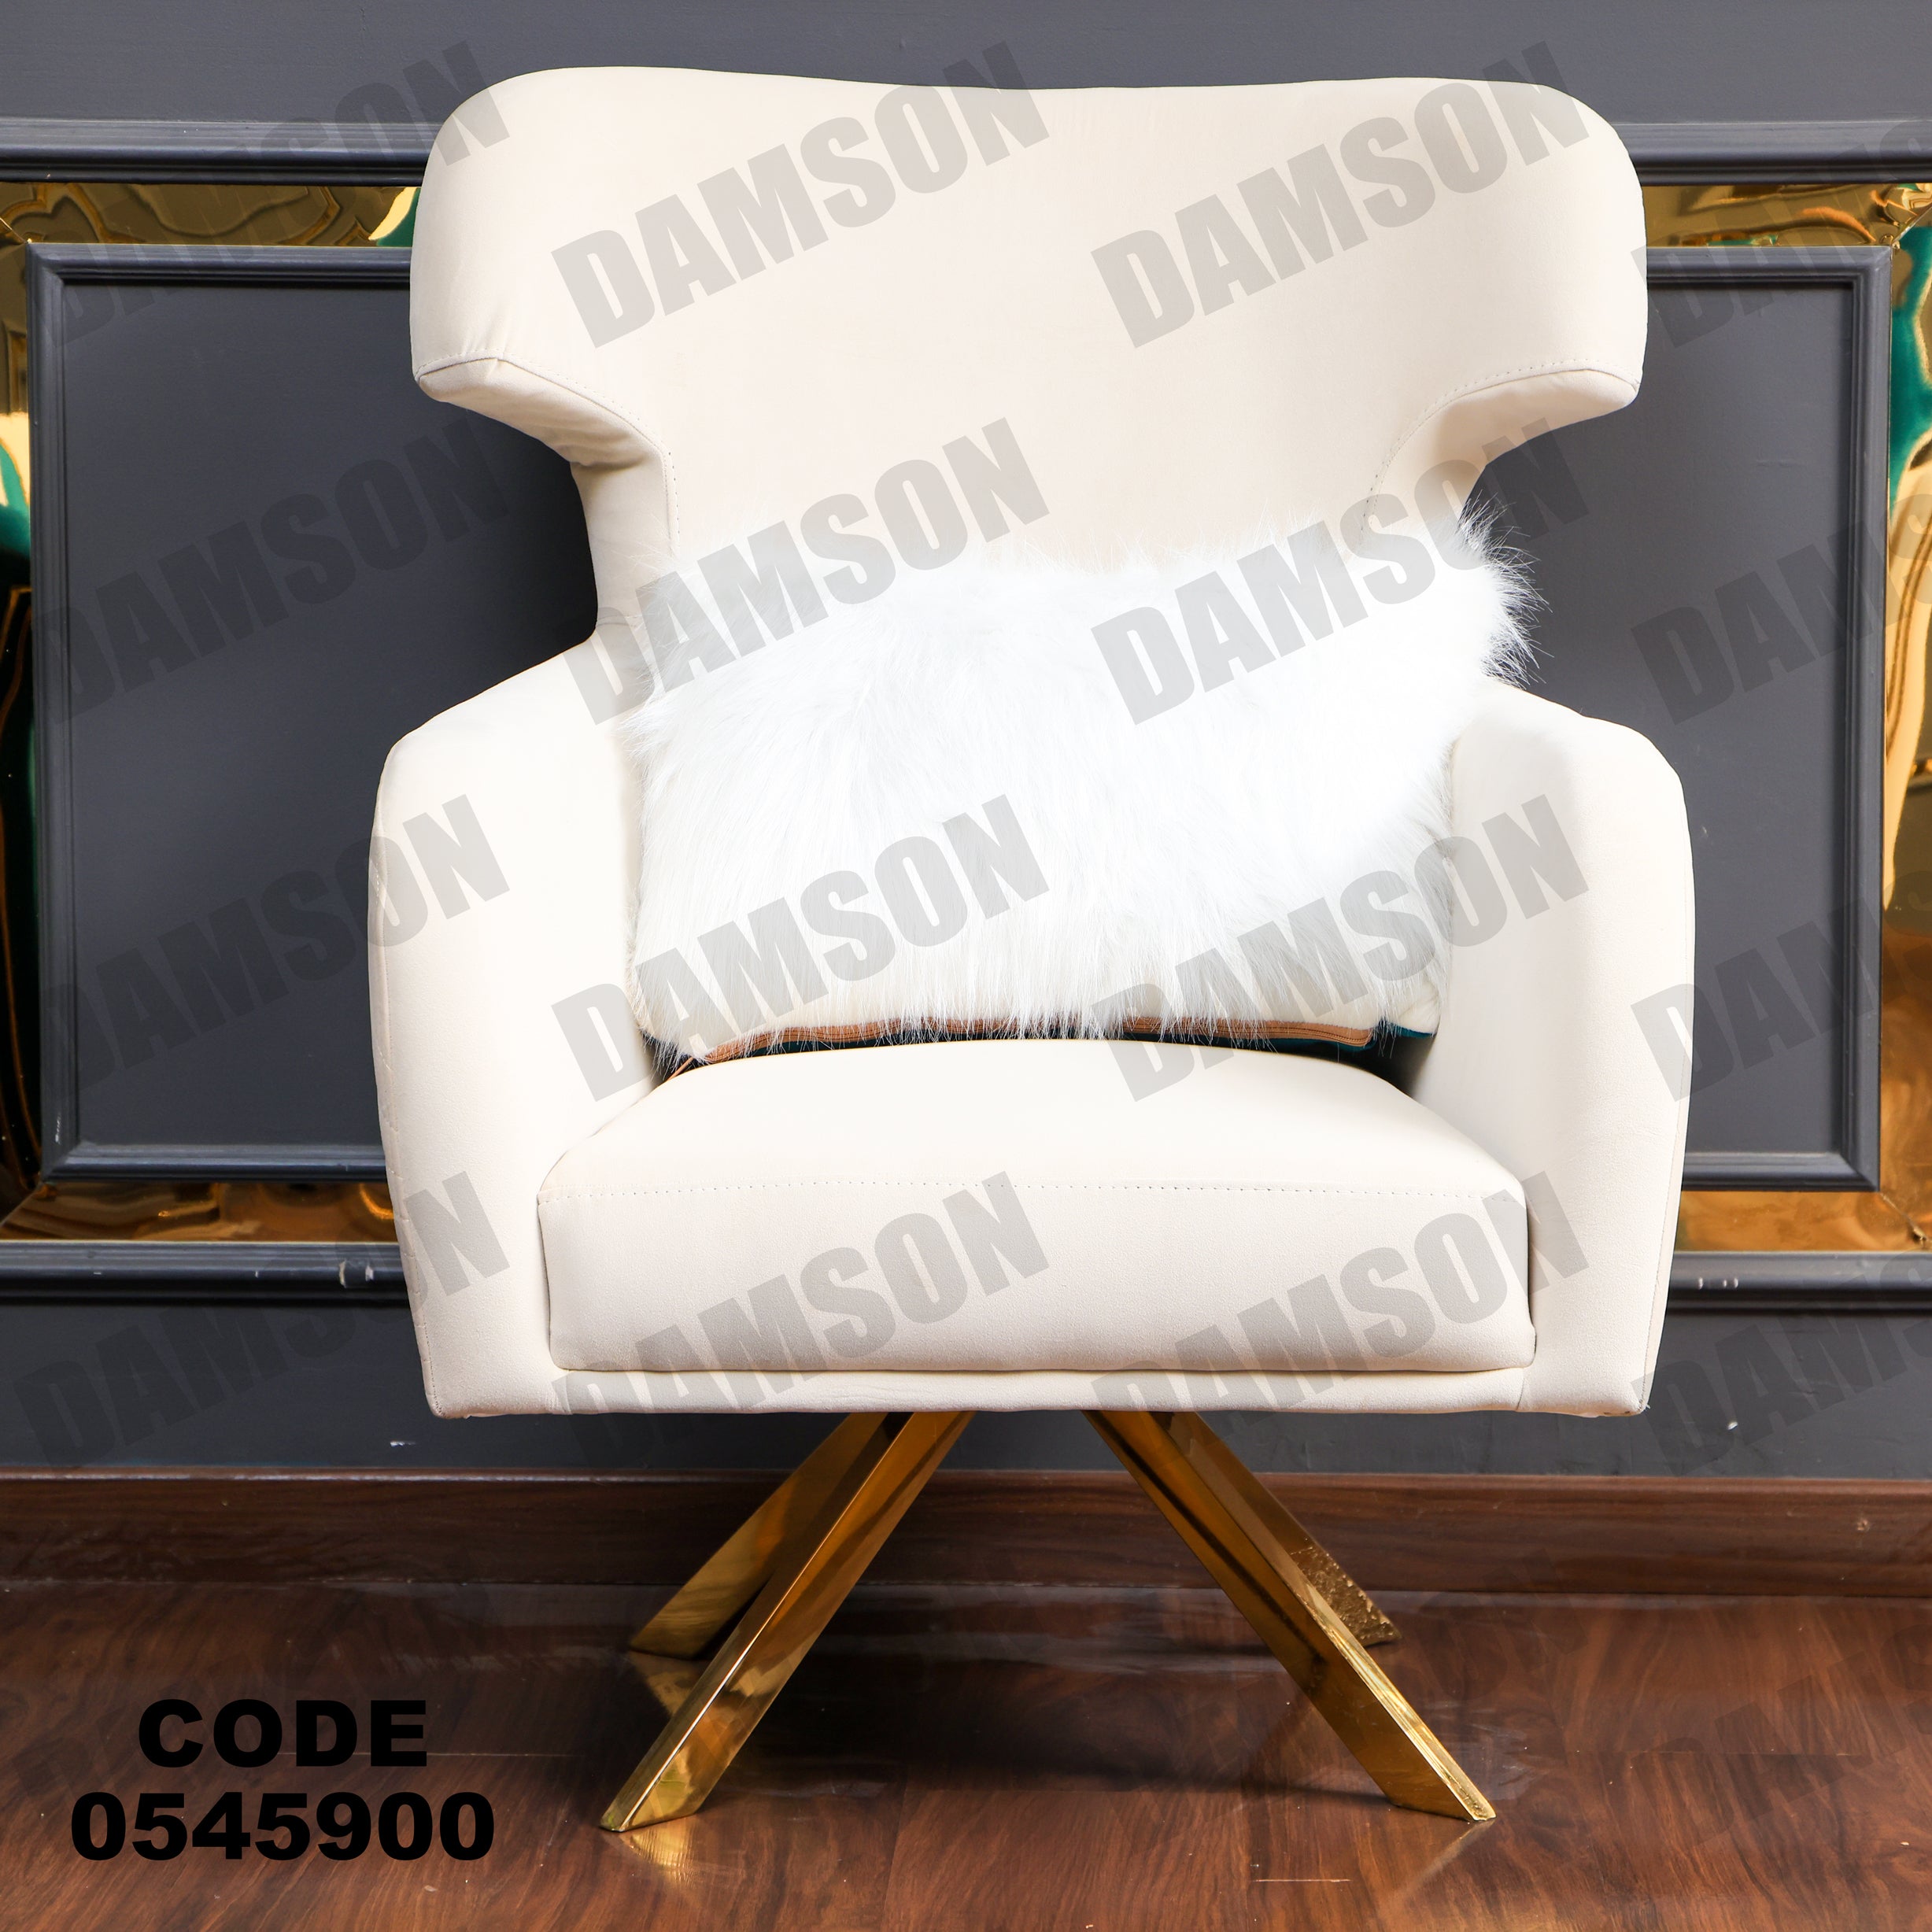 فوتية 2-459 - Damson Furnitureفوتية 2-459